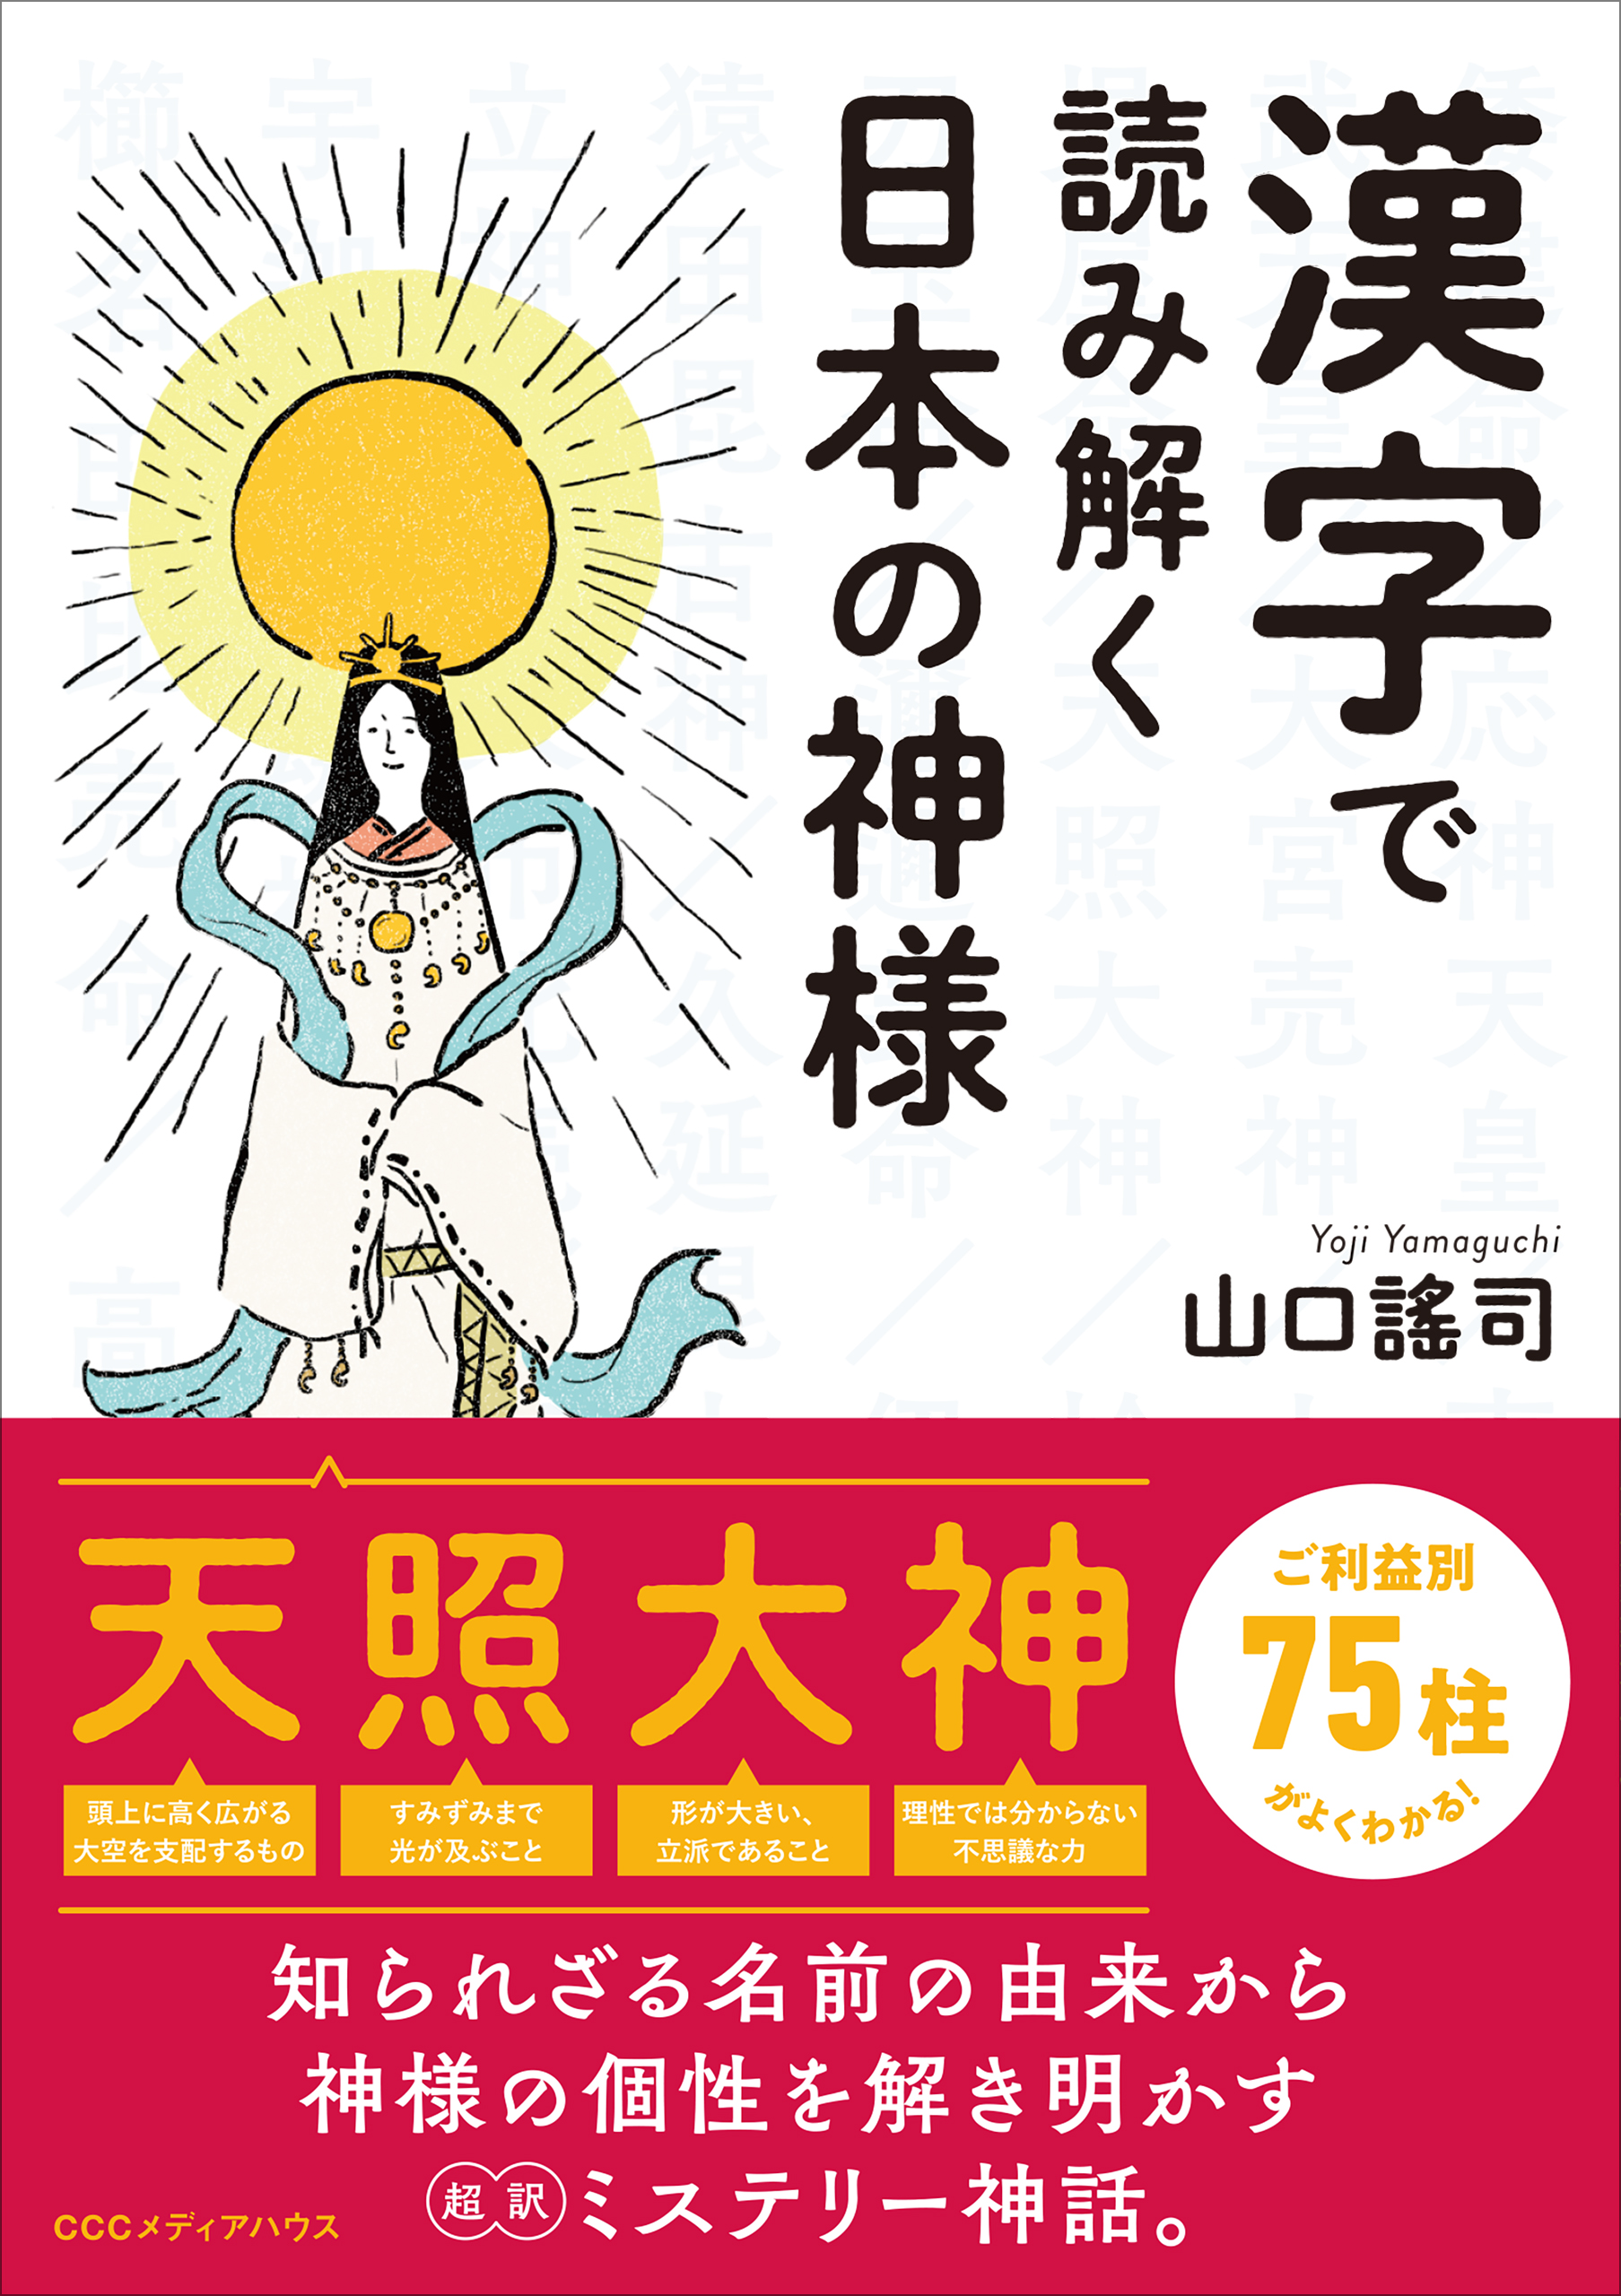 神様の名前に使われている漢字の意味や成り立ちを読み解くことで 神様たちの本当の姿が見えてくる 漢字で読み解く日本の神様 発売 Cccメディアハウスのプレスリリース